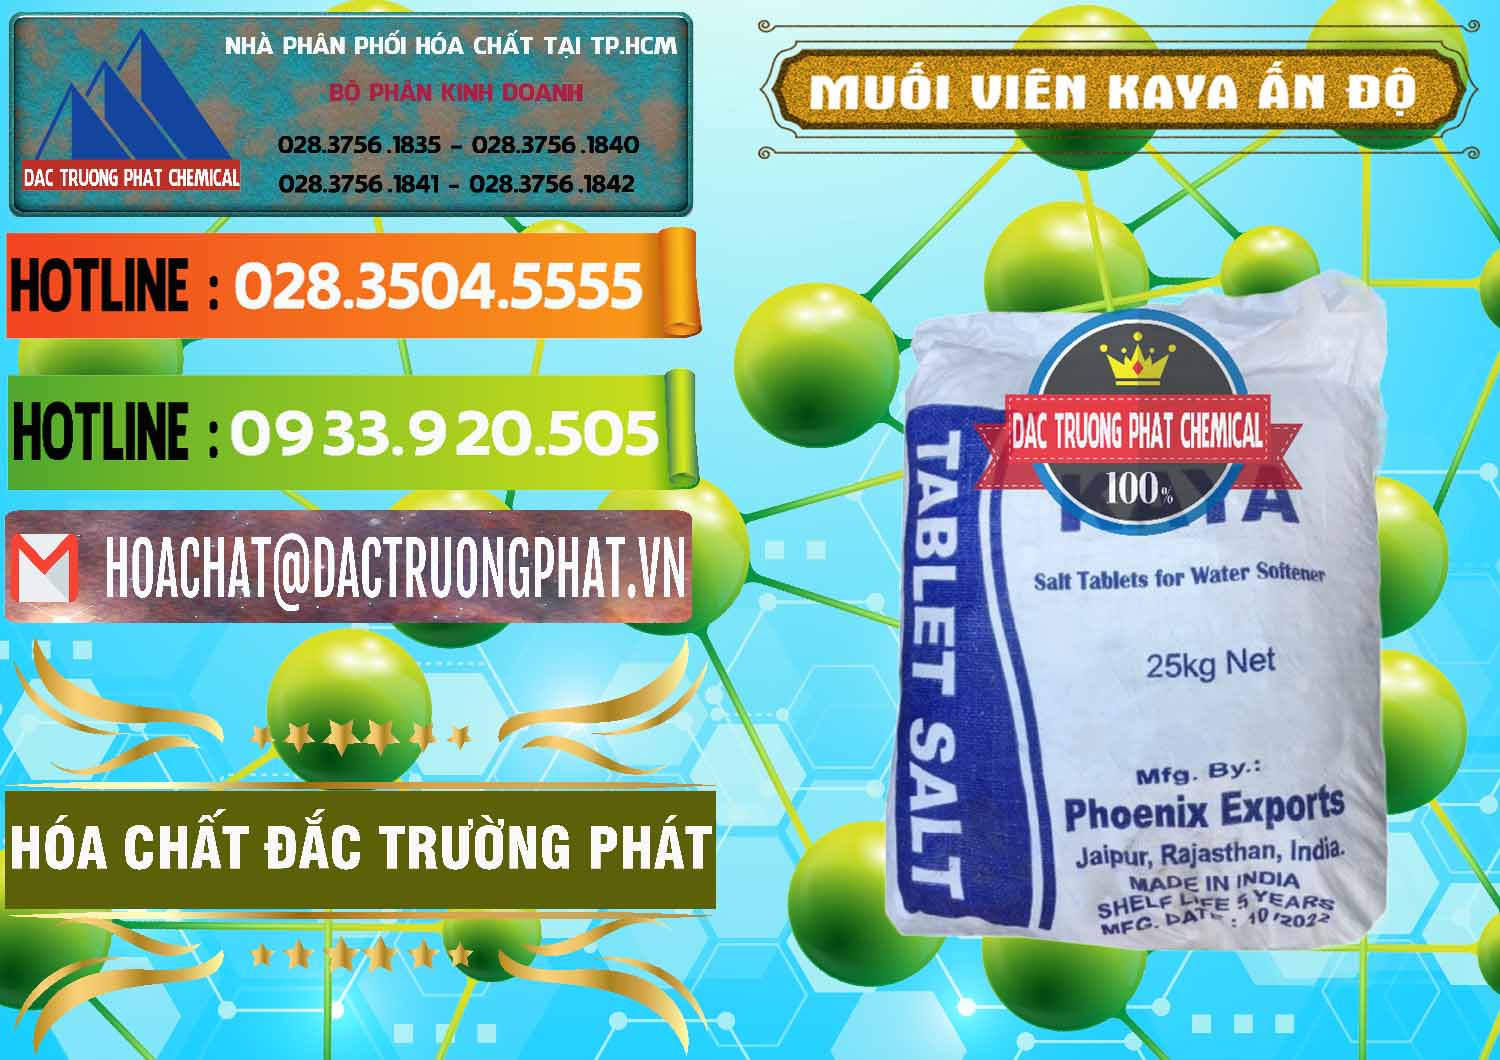 Đơn vị cung cấp & bán Muối NaCL – Sodium Chloride Dạng Viên Tablets Kaya Ấn Độ India - 0368 - Đơn vị chuyên cung cấp _ kinh doanh hóa chất tại TP.HCM - cungcaphoachat.com.vn